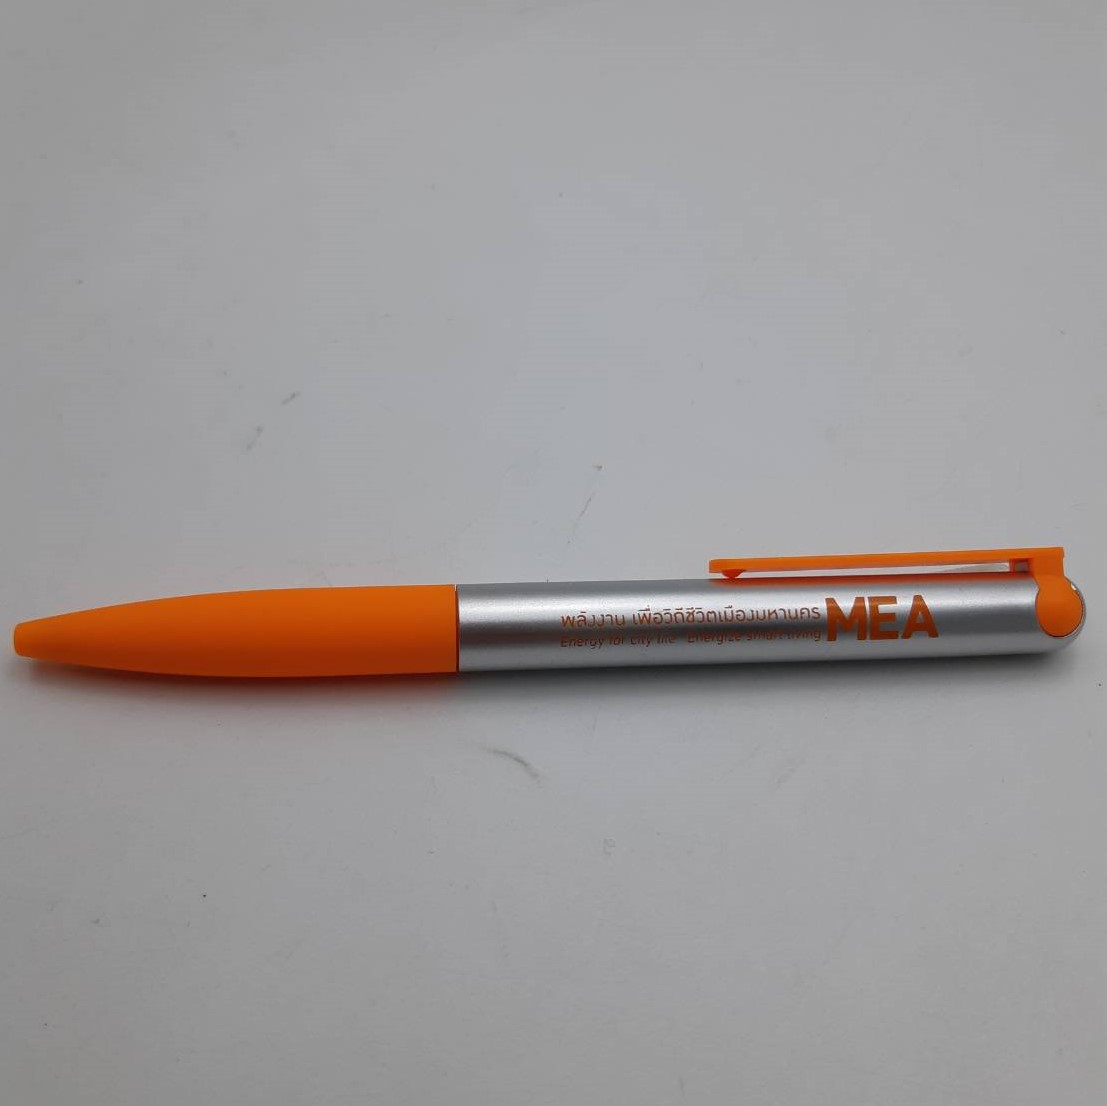 ปากกาพลาสติก PP273